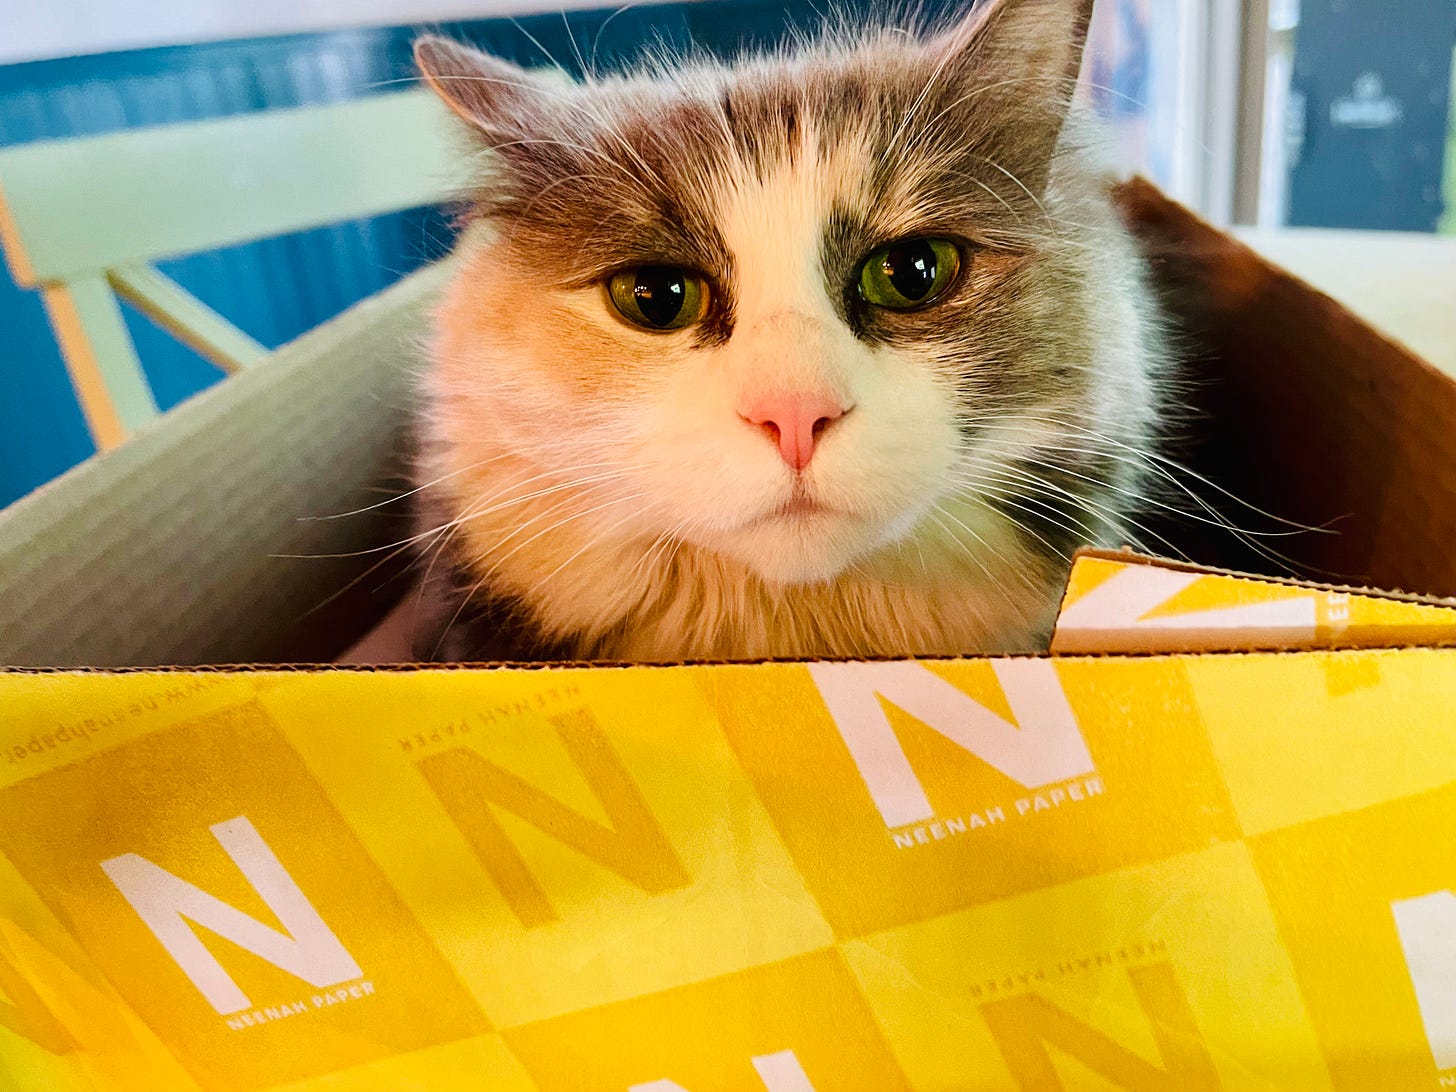 cat peeking out of a box